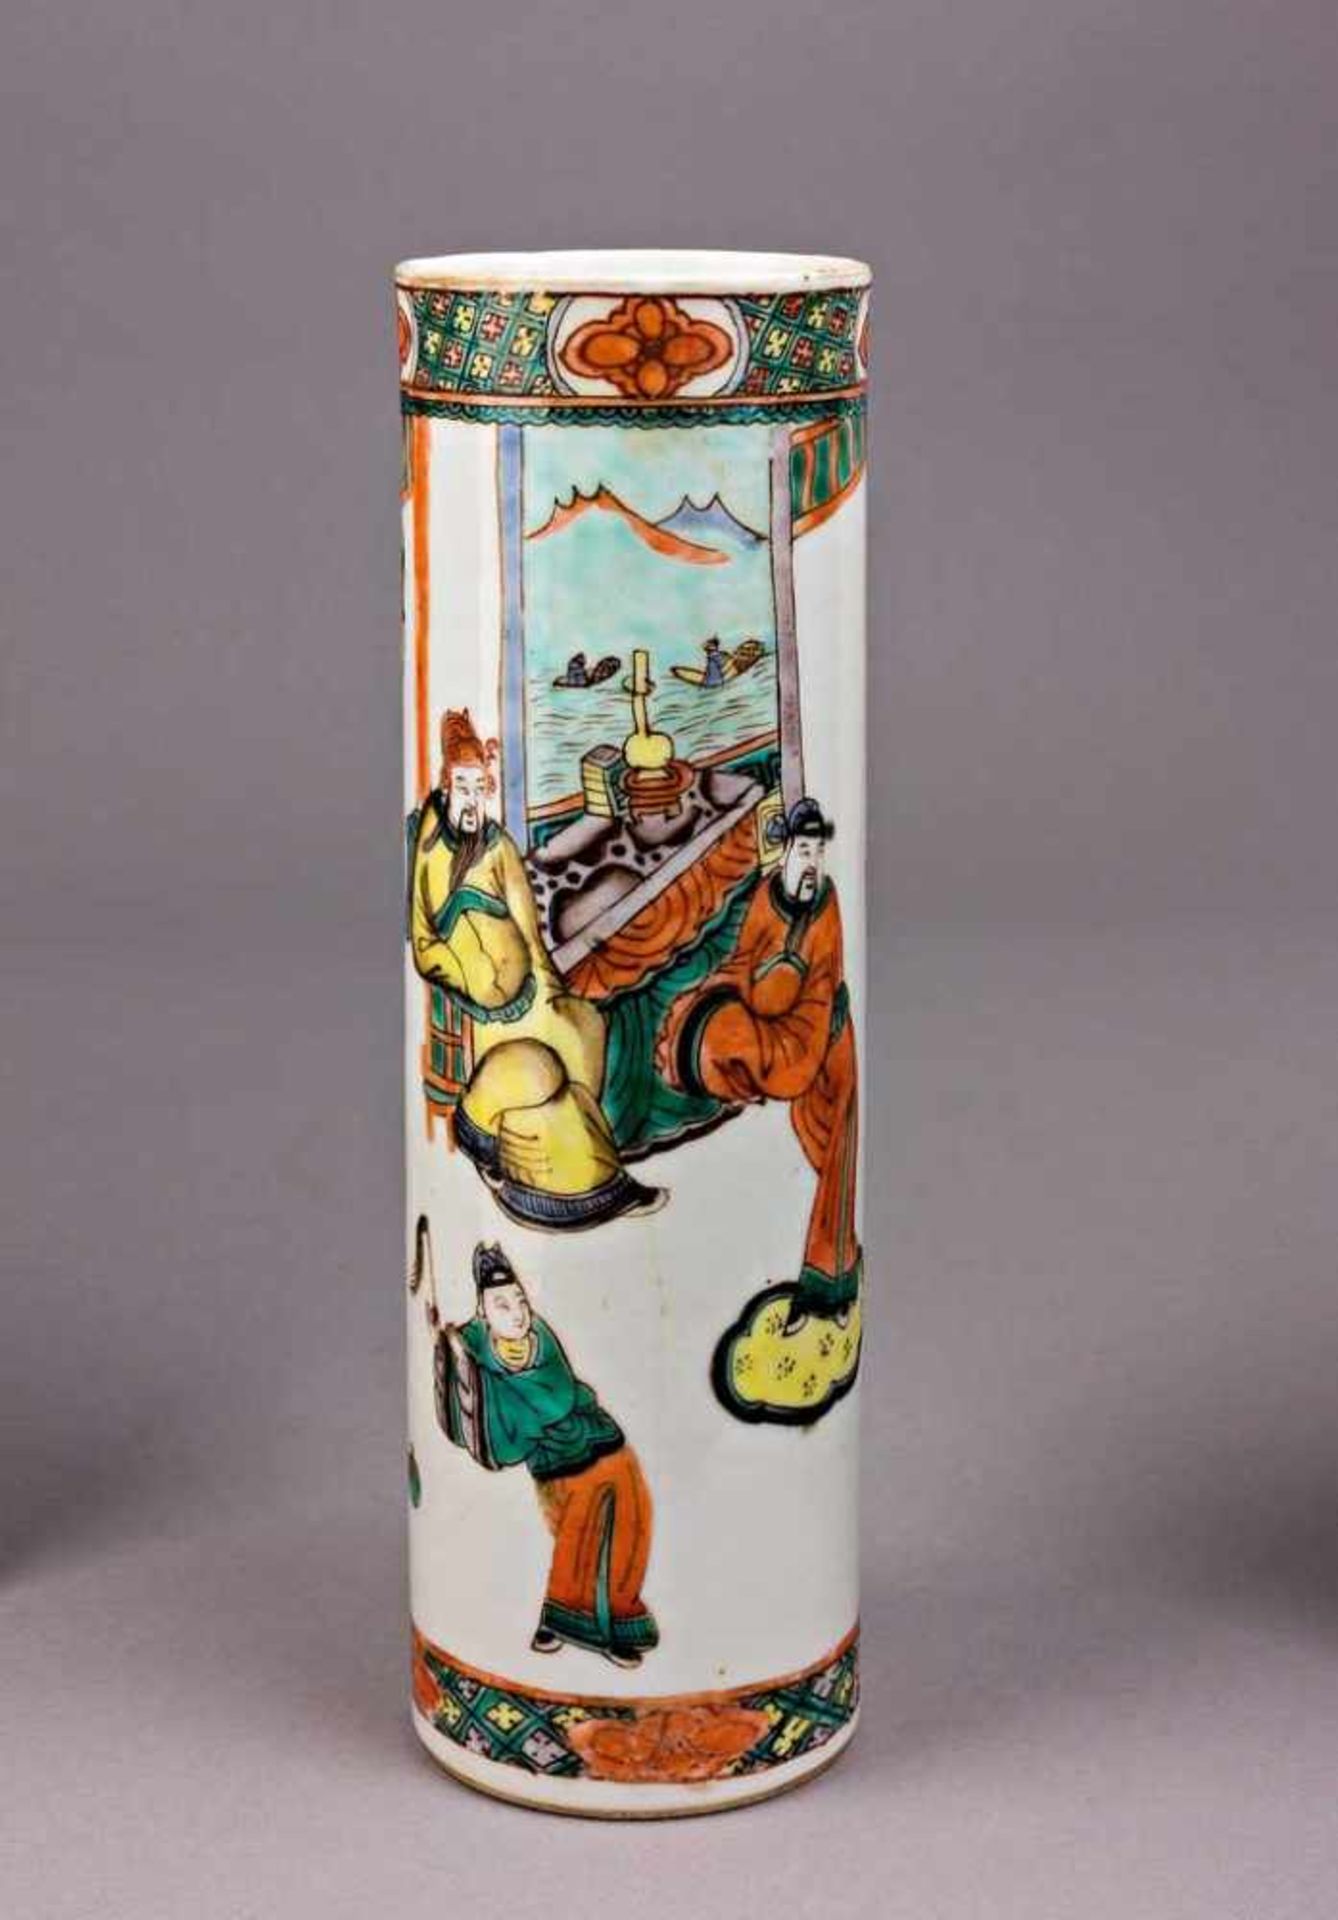 Zylindrische Famille-verte-Vase. Szene am Hof mit Würdenträgern und Kaiser. Fenster mit